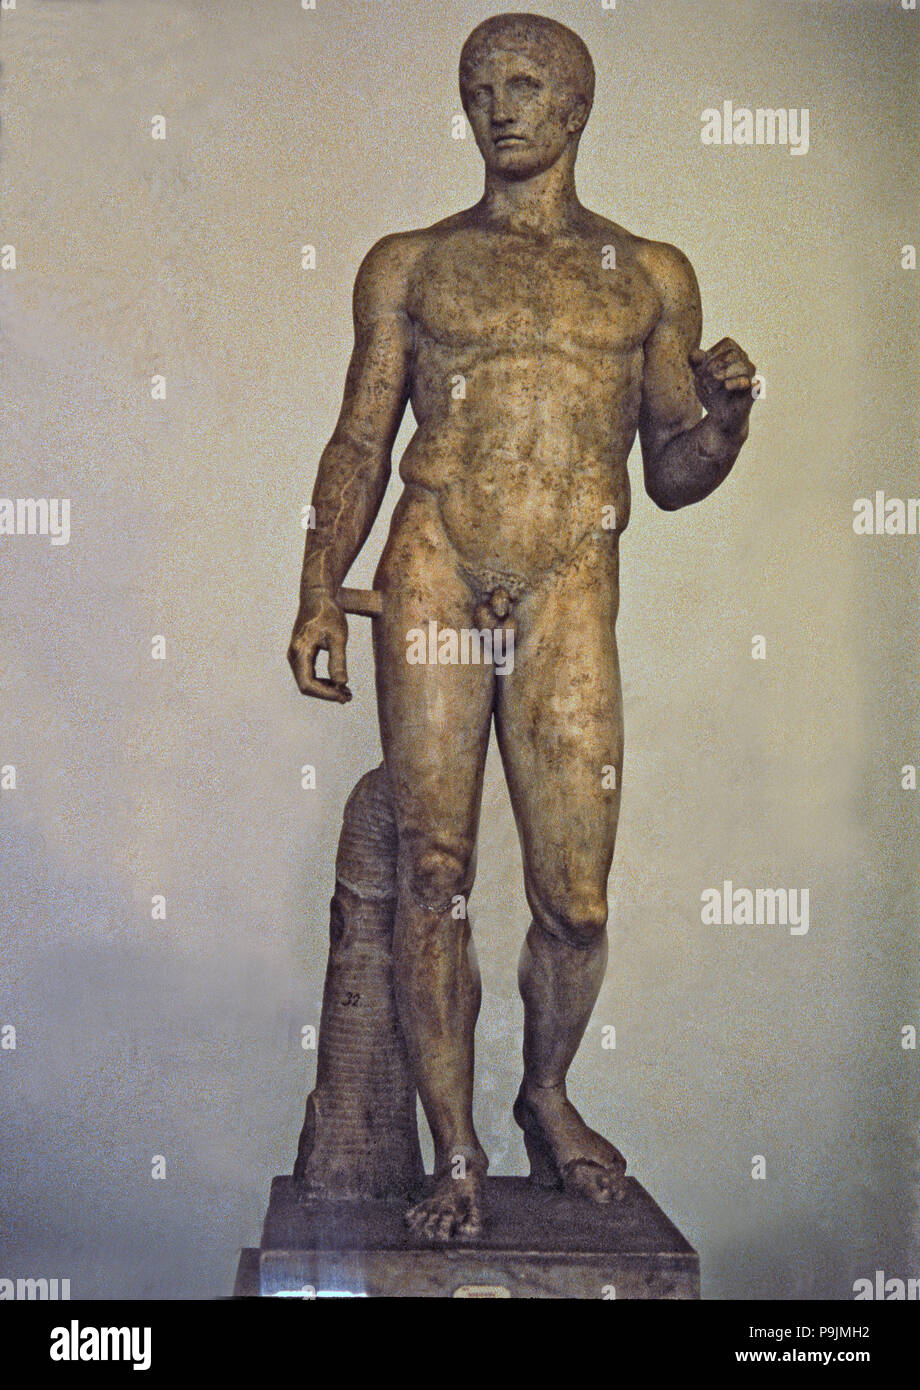 Doryphoros, 5th century b.C., Roman copy from 1st century found in Pompeii. Stock Photo